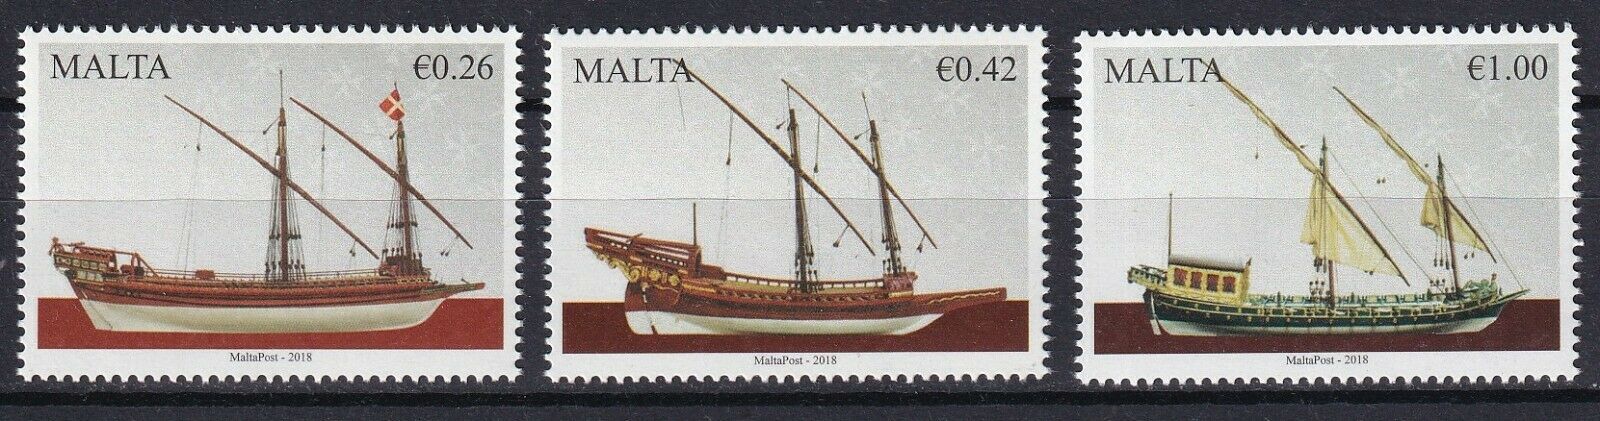 Malta 2018 Ships 3 MNH stamps